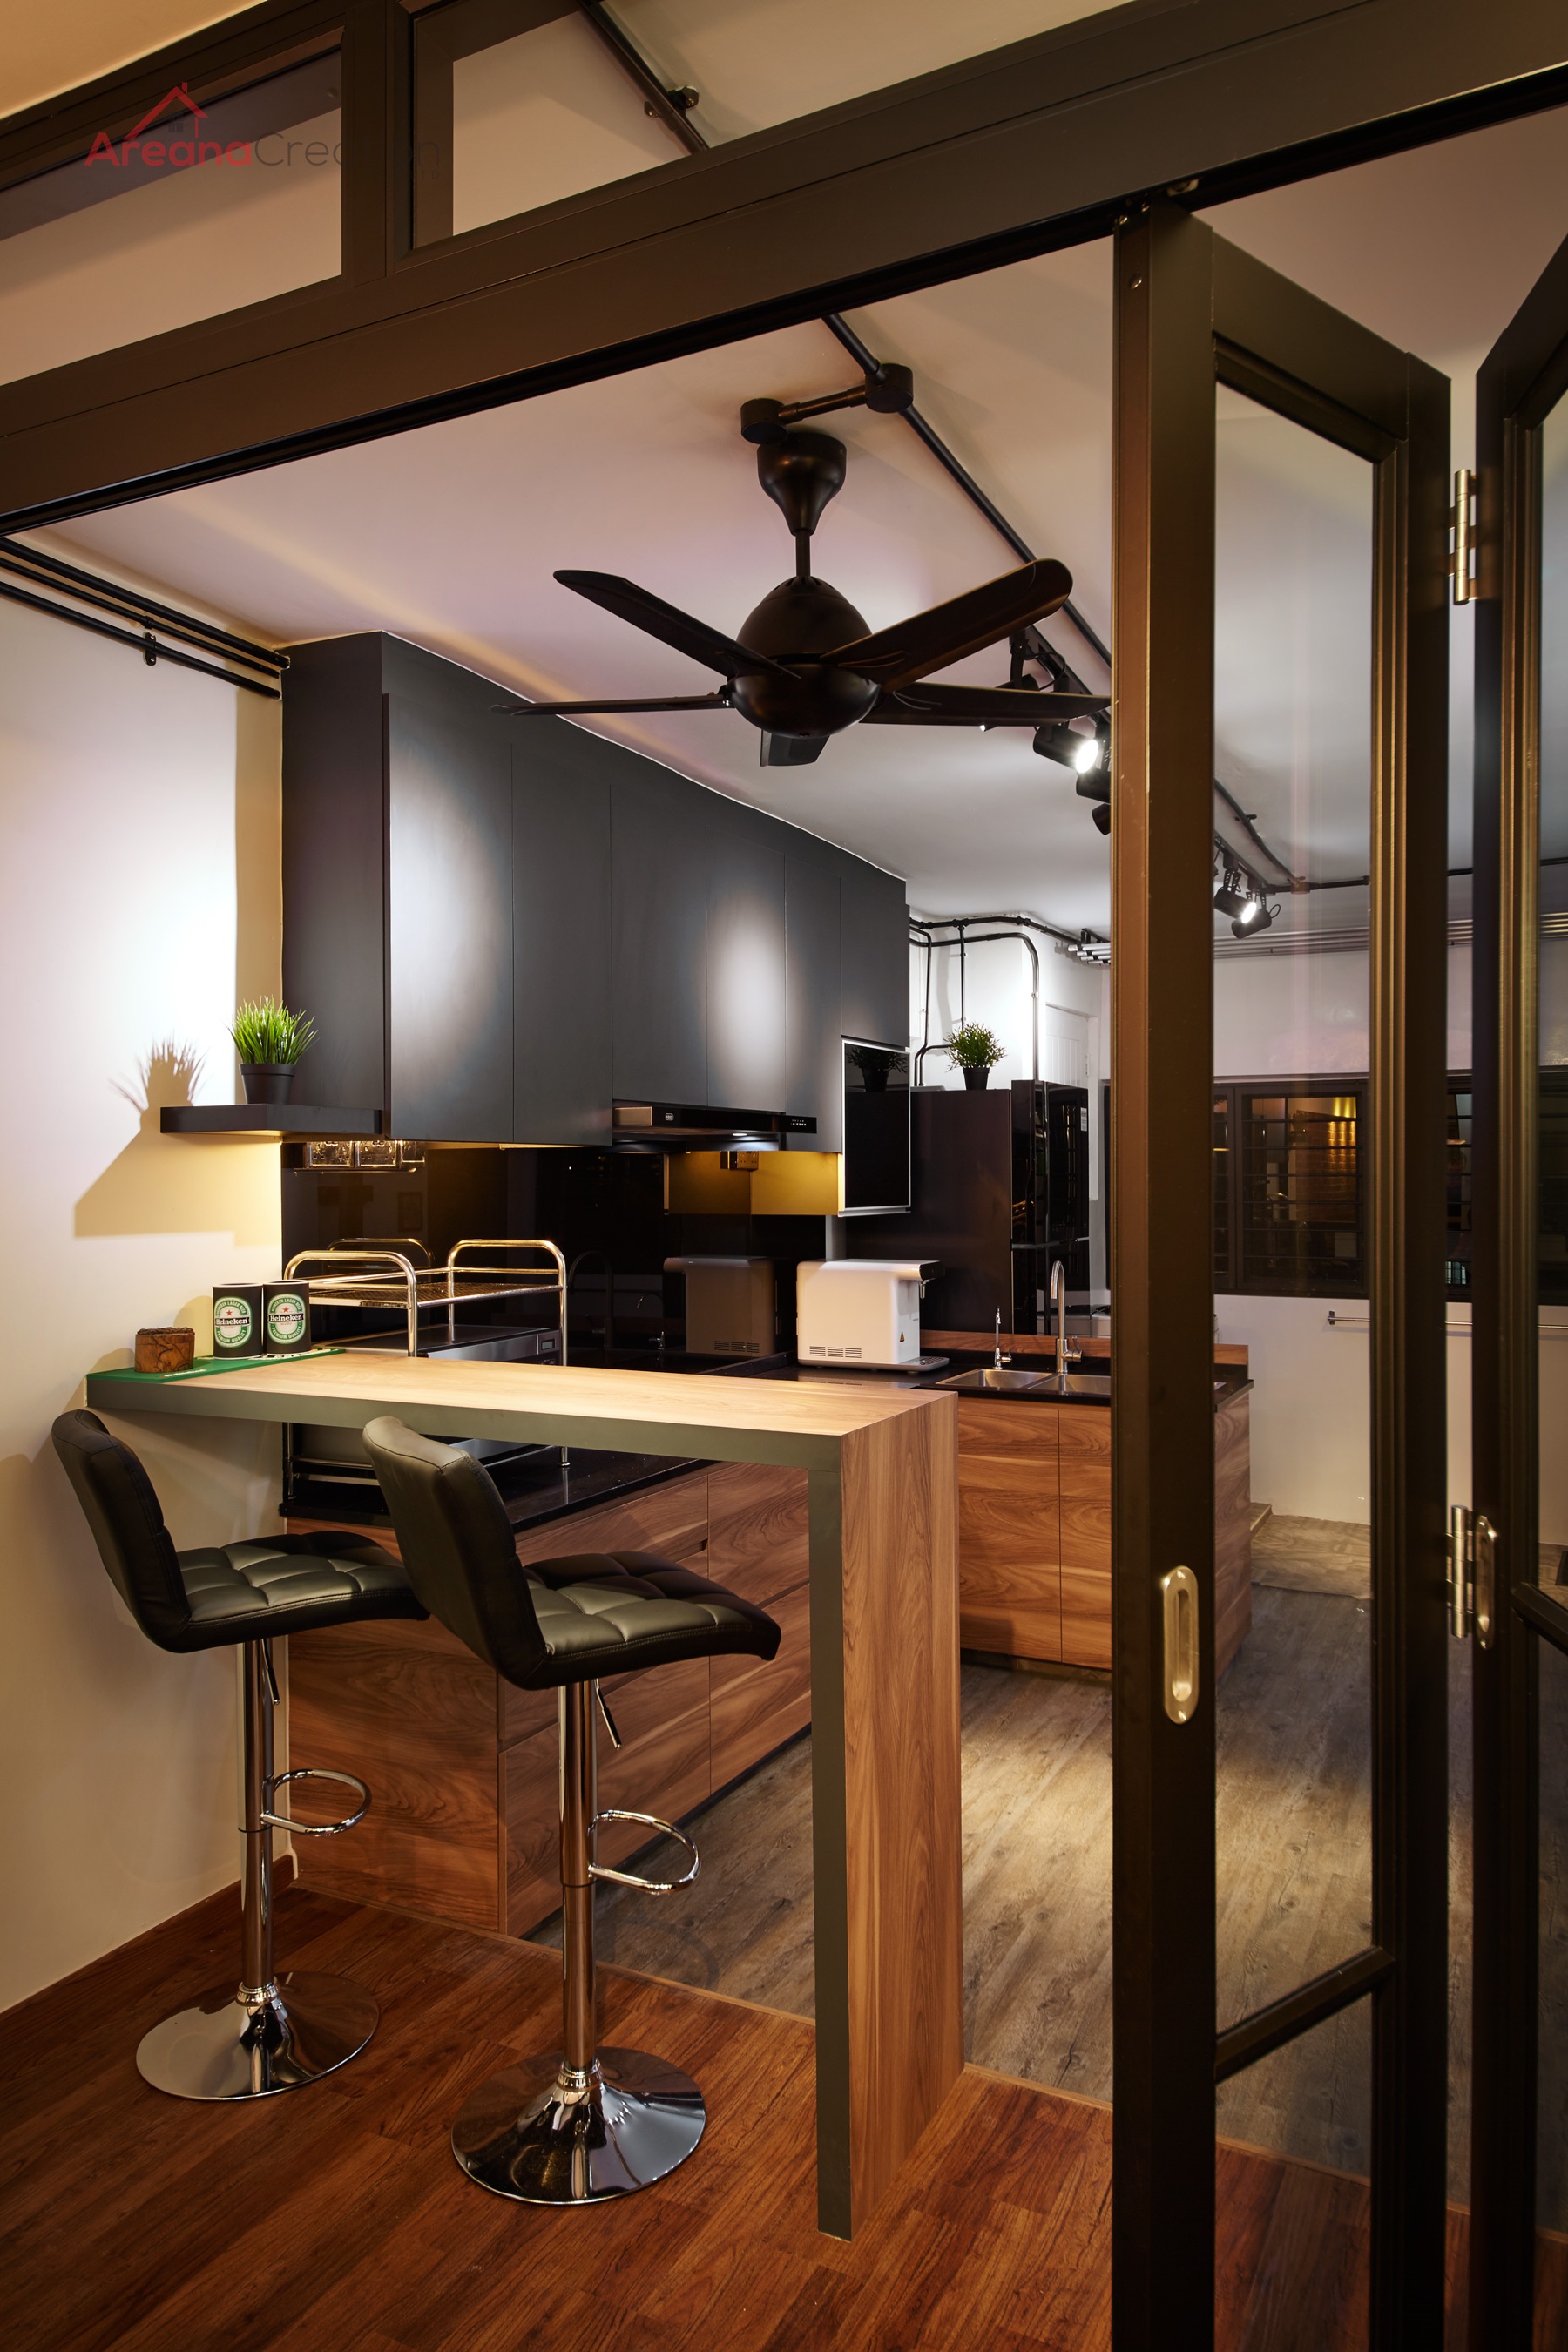 Industrial Design - Kitchen - HDB 3 Room - Design by Areana Creation Pte Ltd